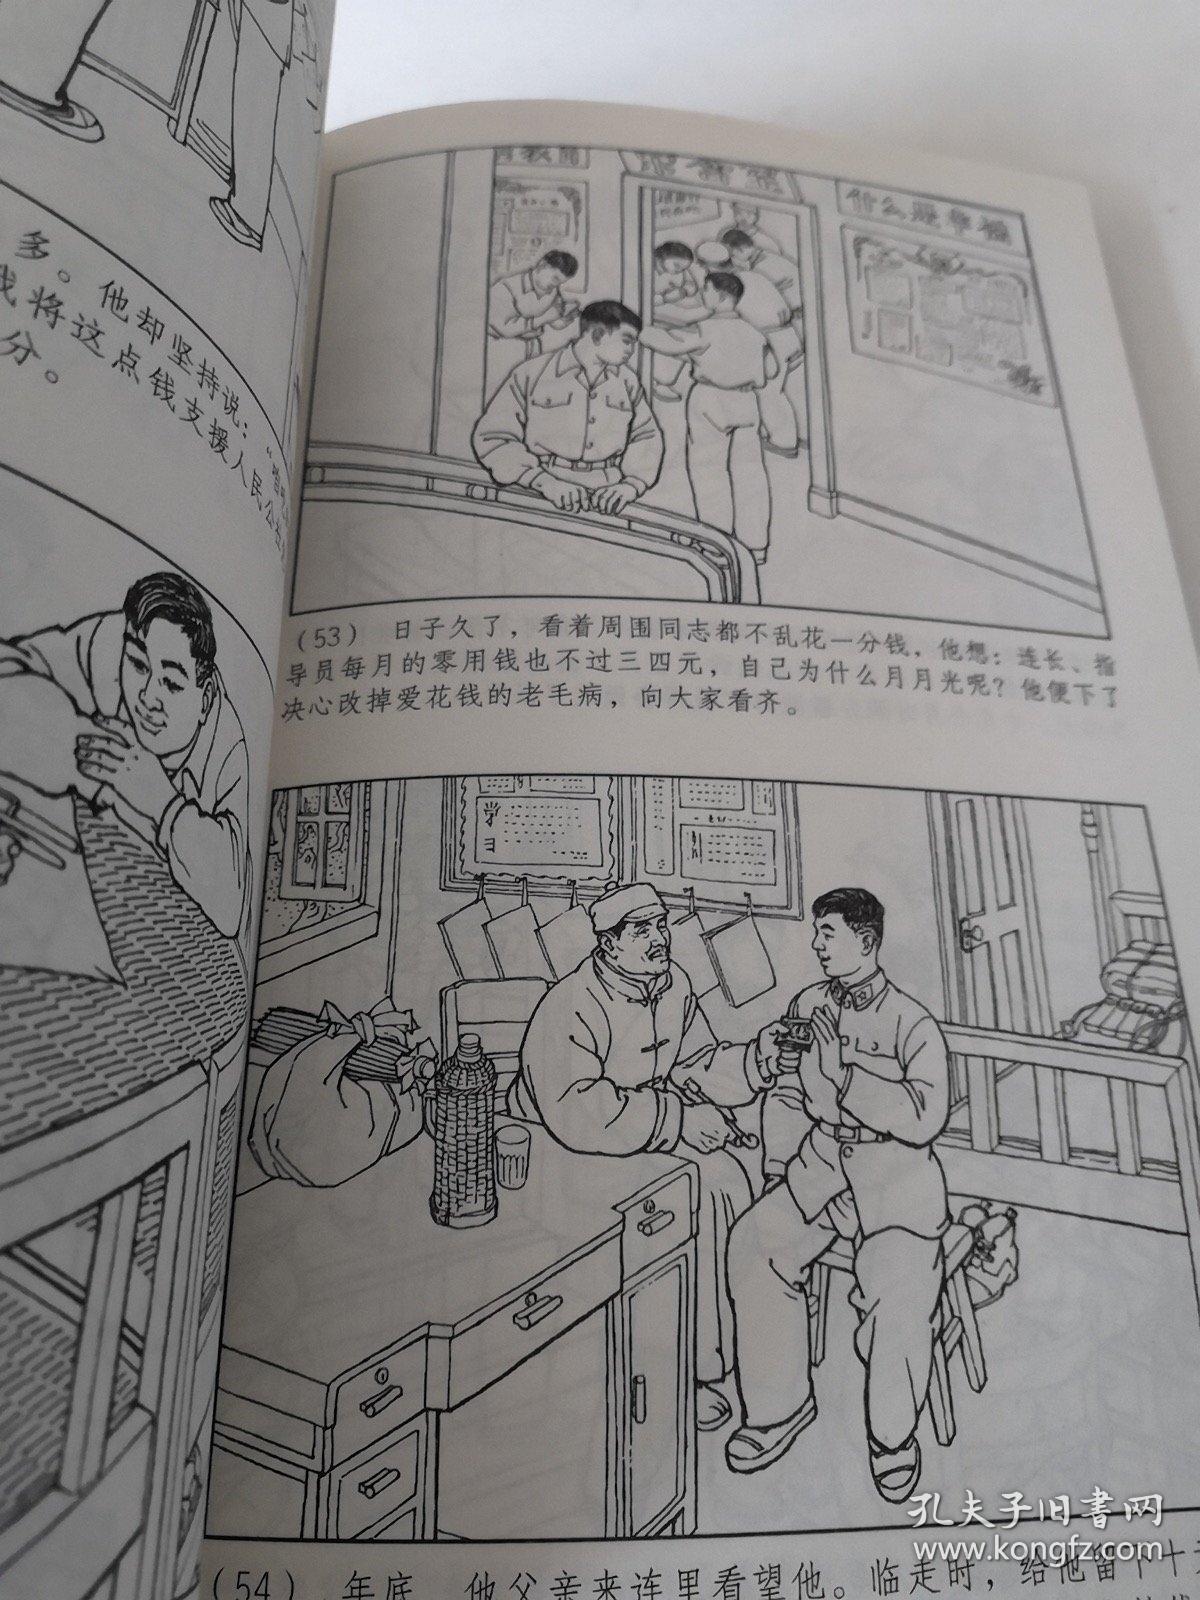 中国连环画优秀作品读本:霓虹灯下的哨兵。以图为准建议邮挂。